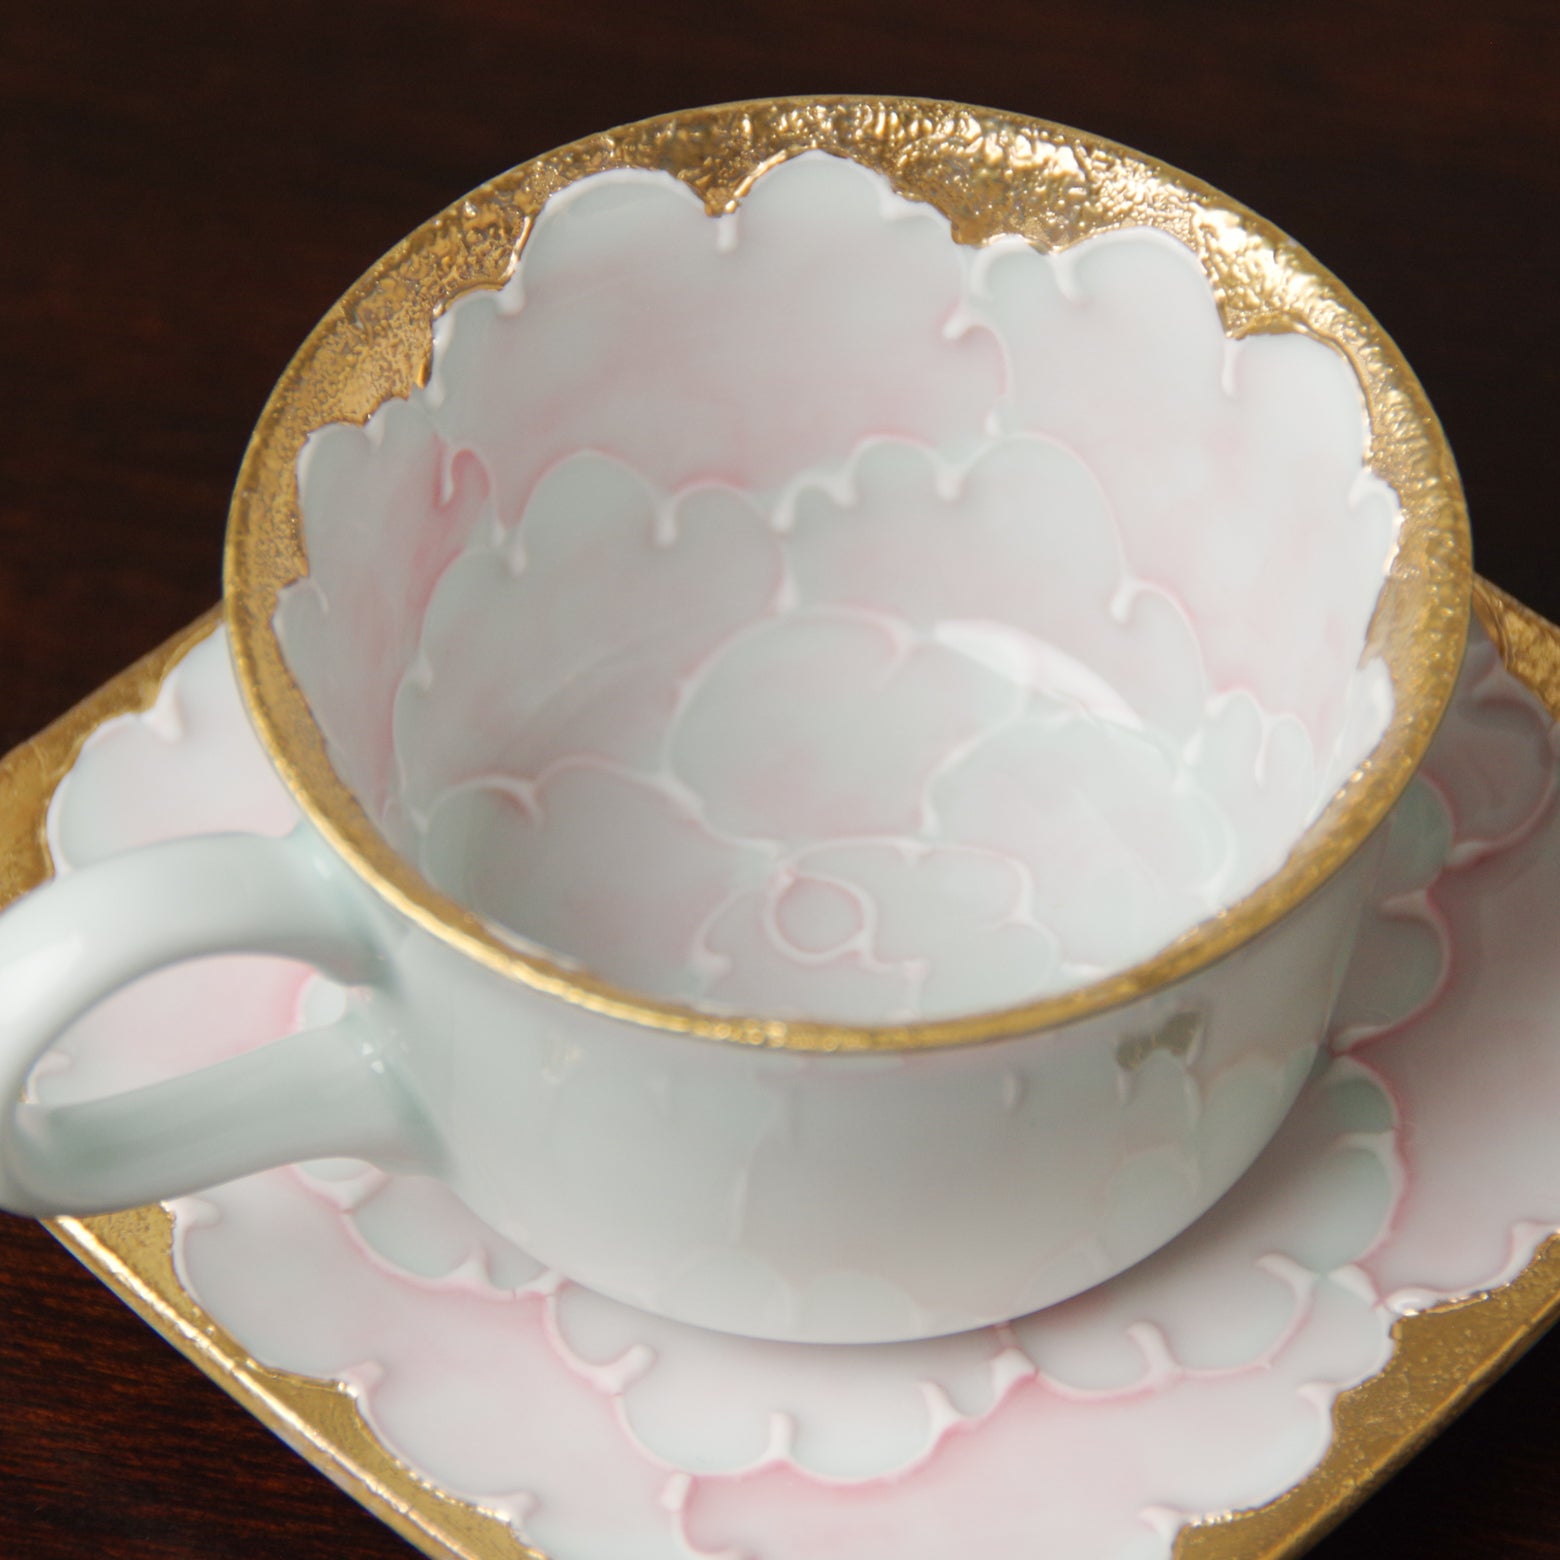 有田焼 金牡丹(ピンク) デミタス碗皿 75ml Bunzan コーヒーカップ Studio1156